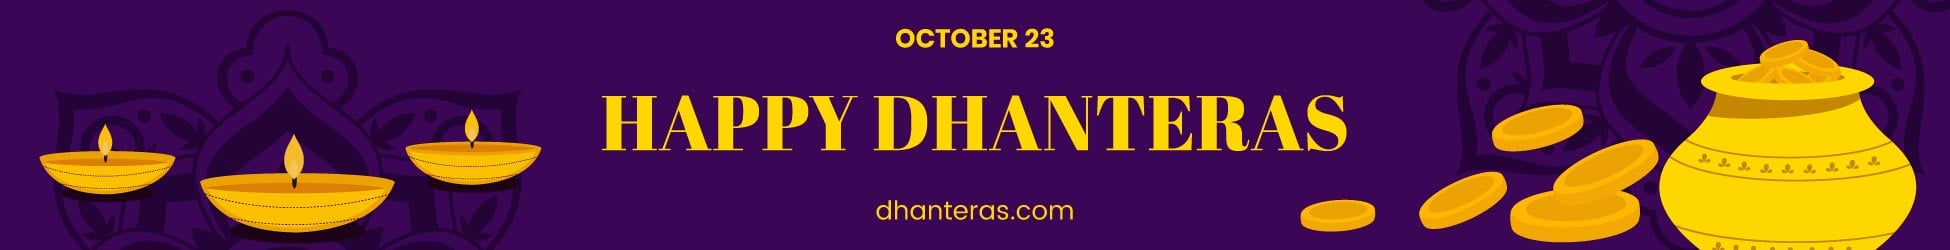 Dhanteras Website Banner